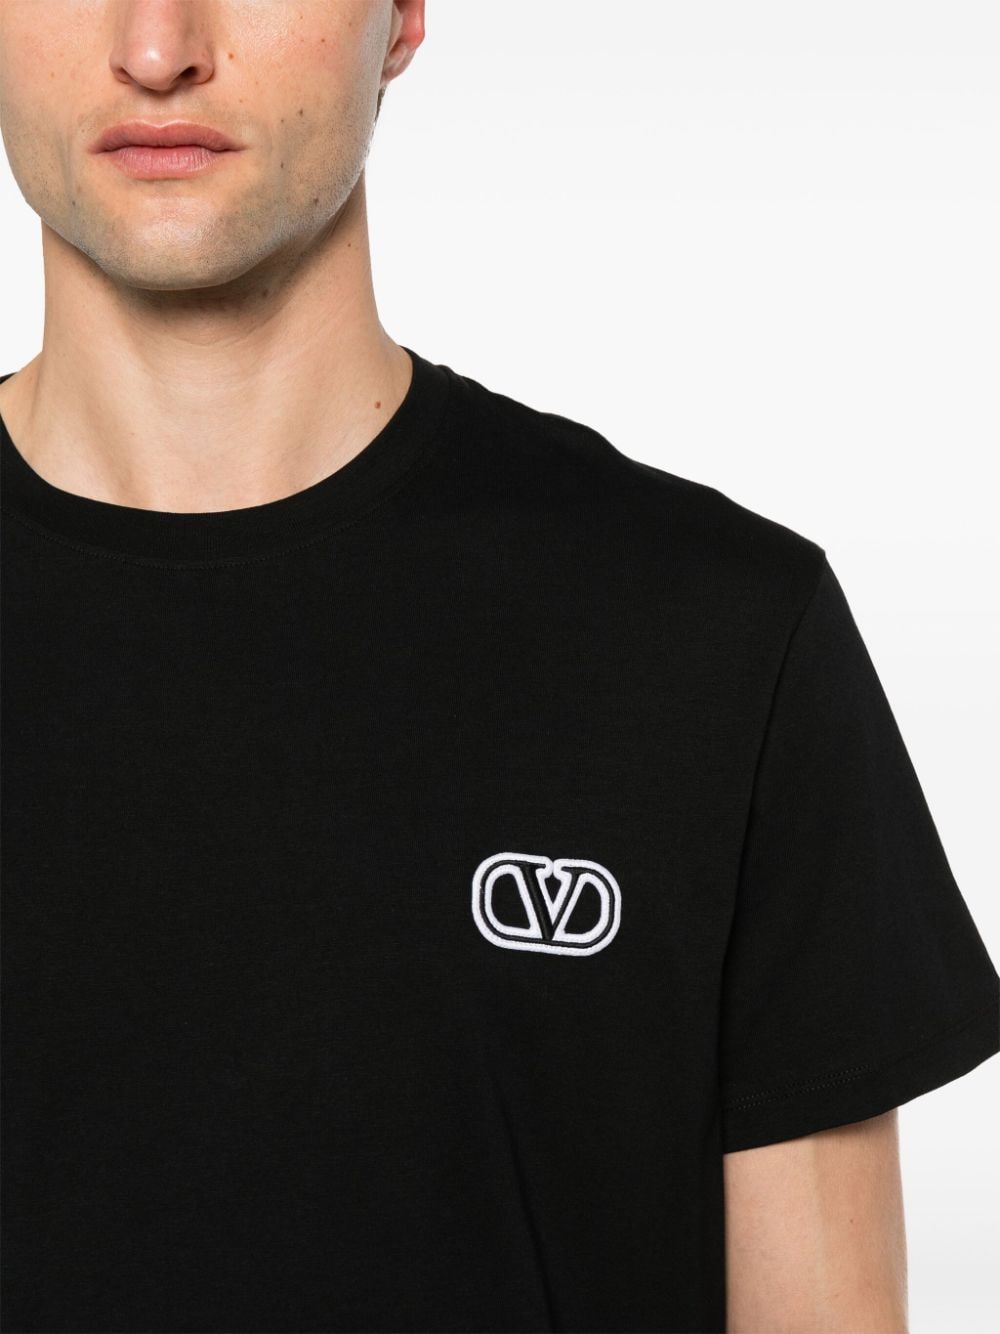 T-shirt in cotone con logo V<br><br><br>